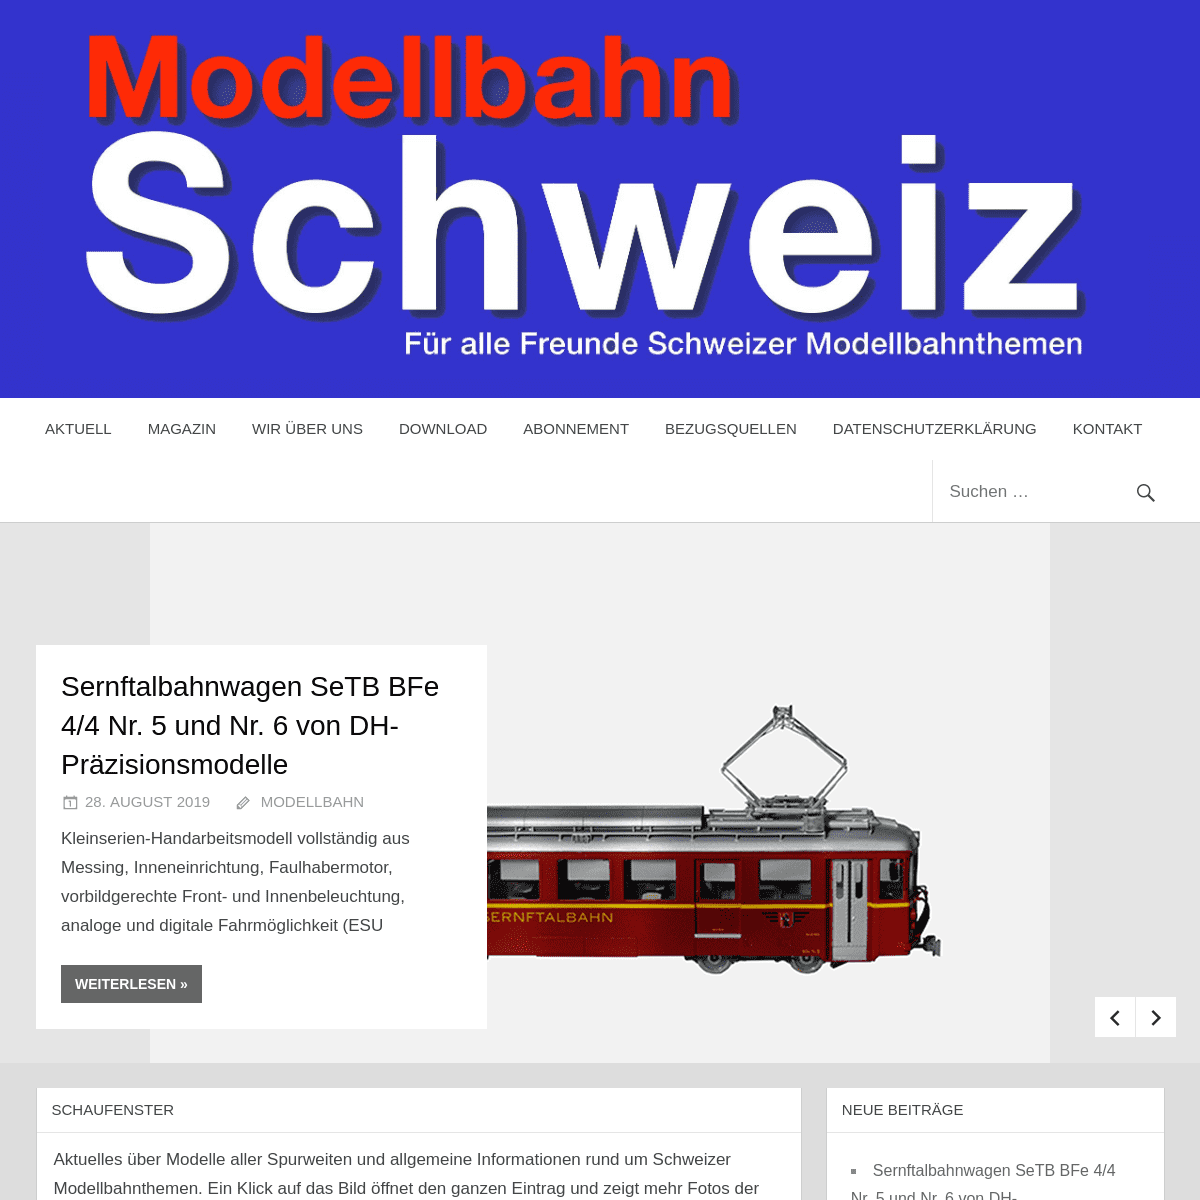 Modellbahn Schweiz – Die Seite für alle Freunde Schweizer Modellbahnthemen